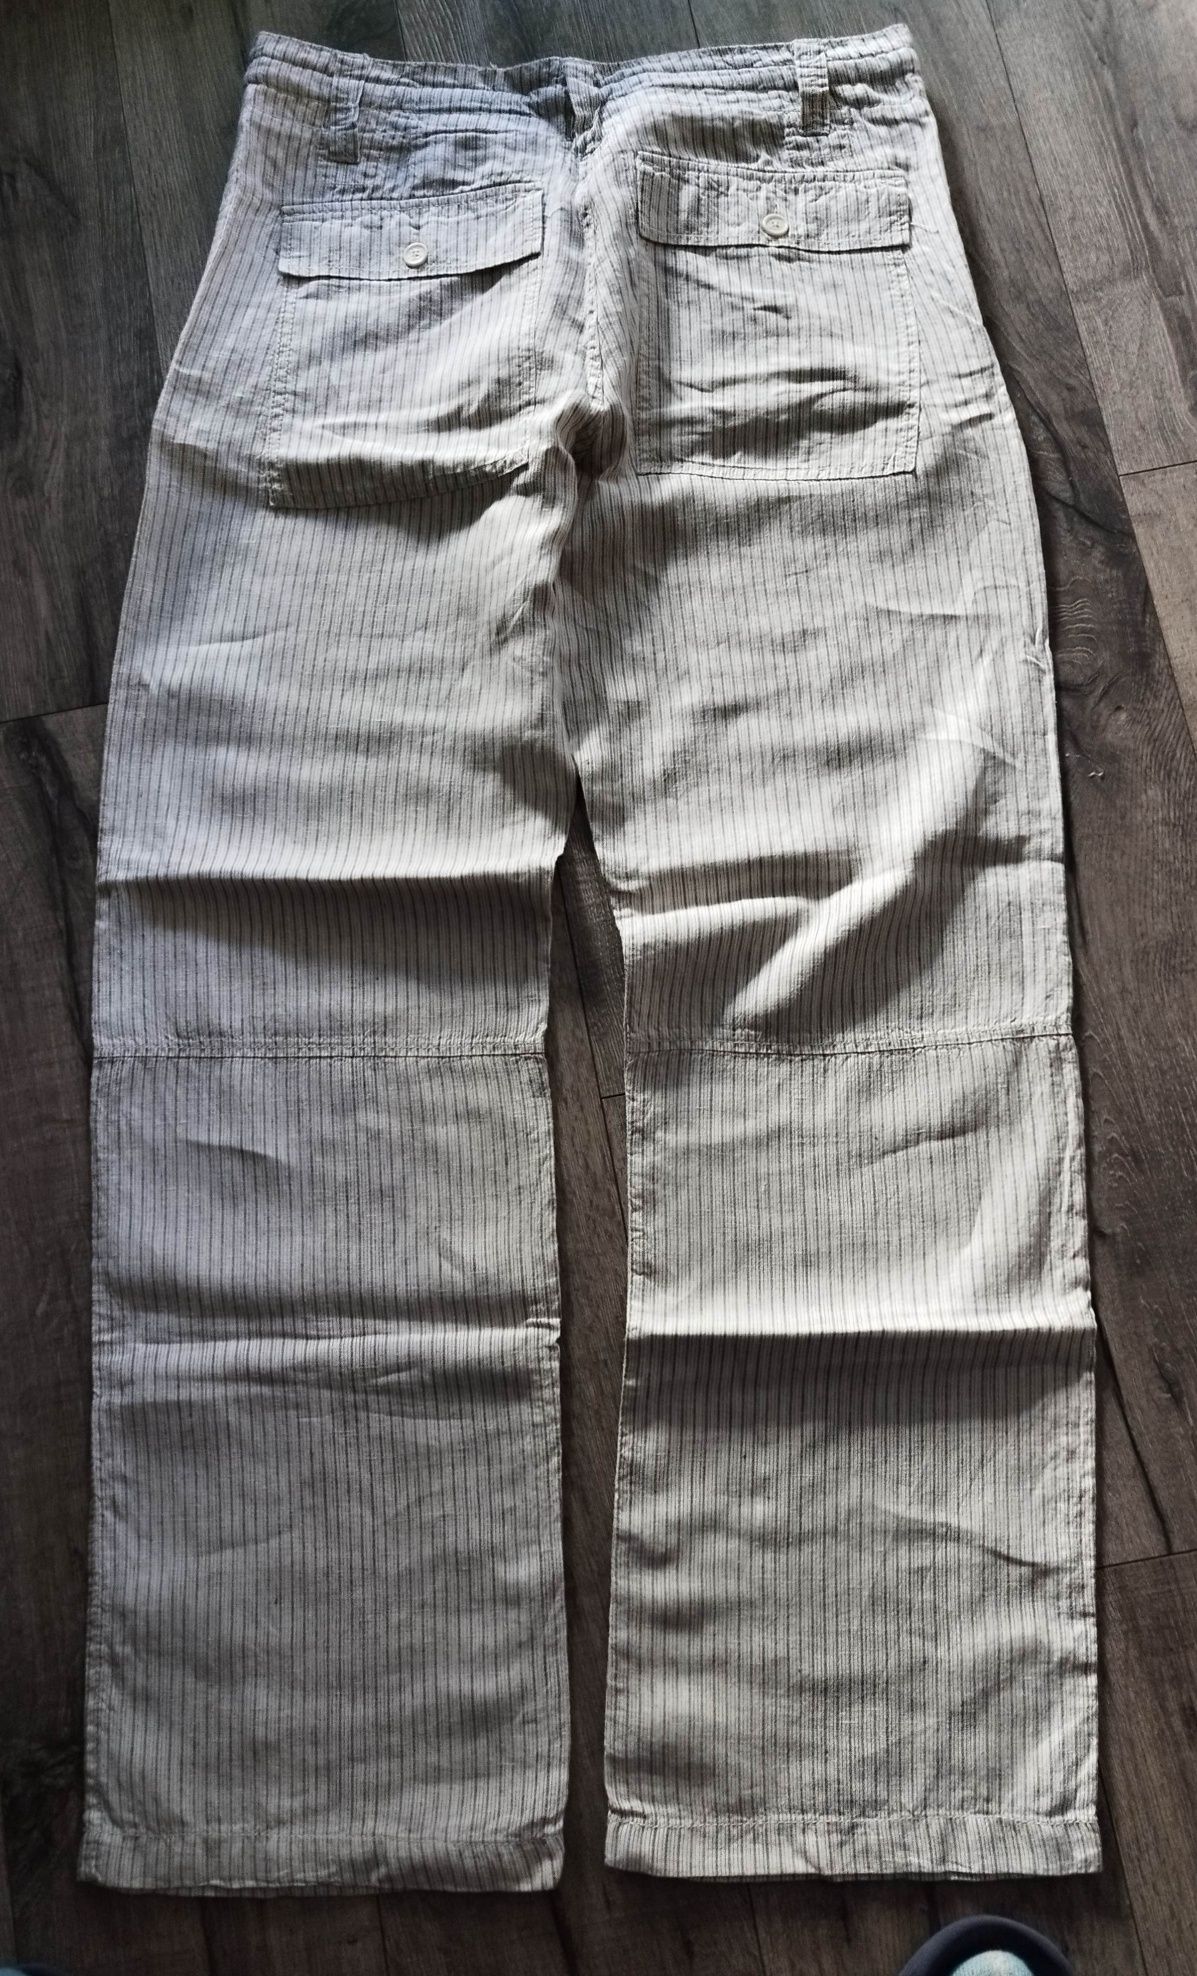 Letnie męskie spodnie.L O. O. G. by H&M. Modne, szerokie.